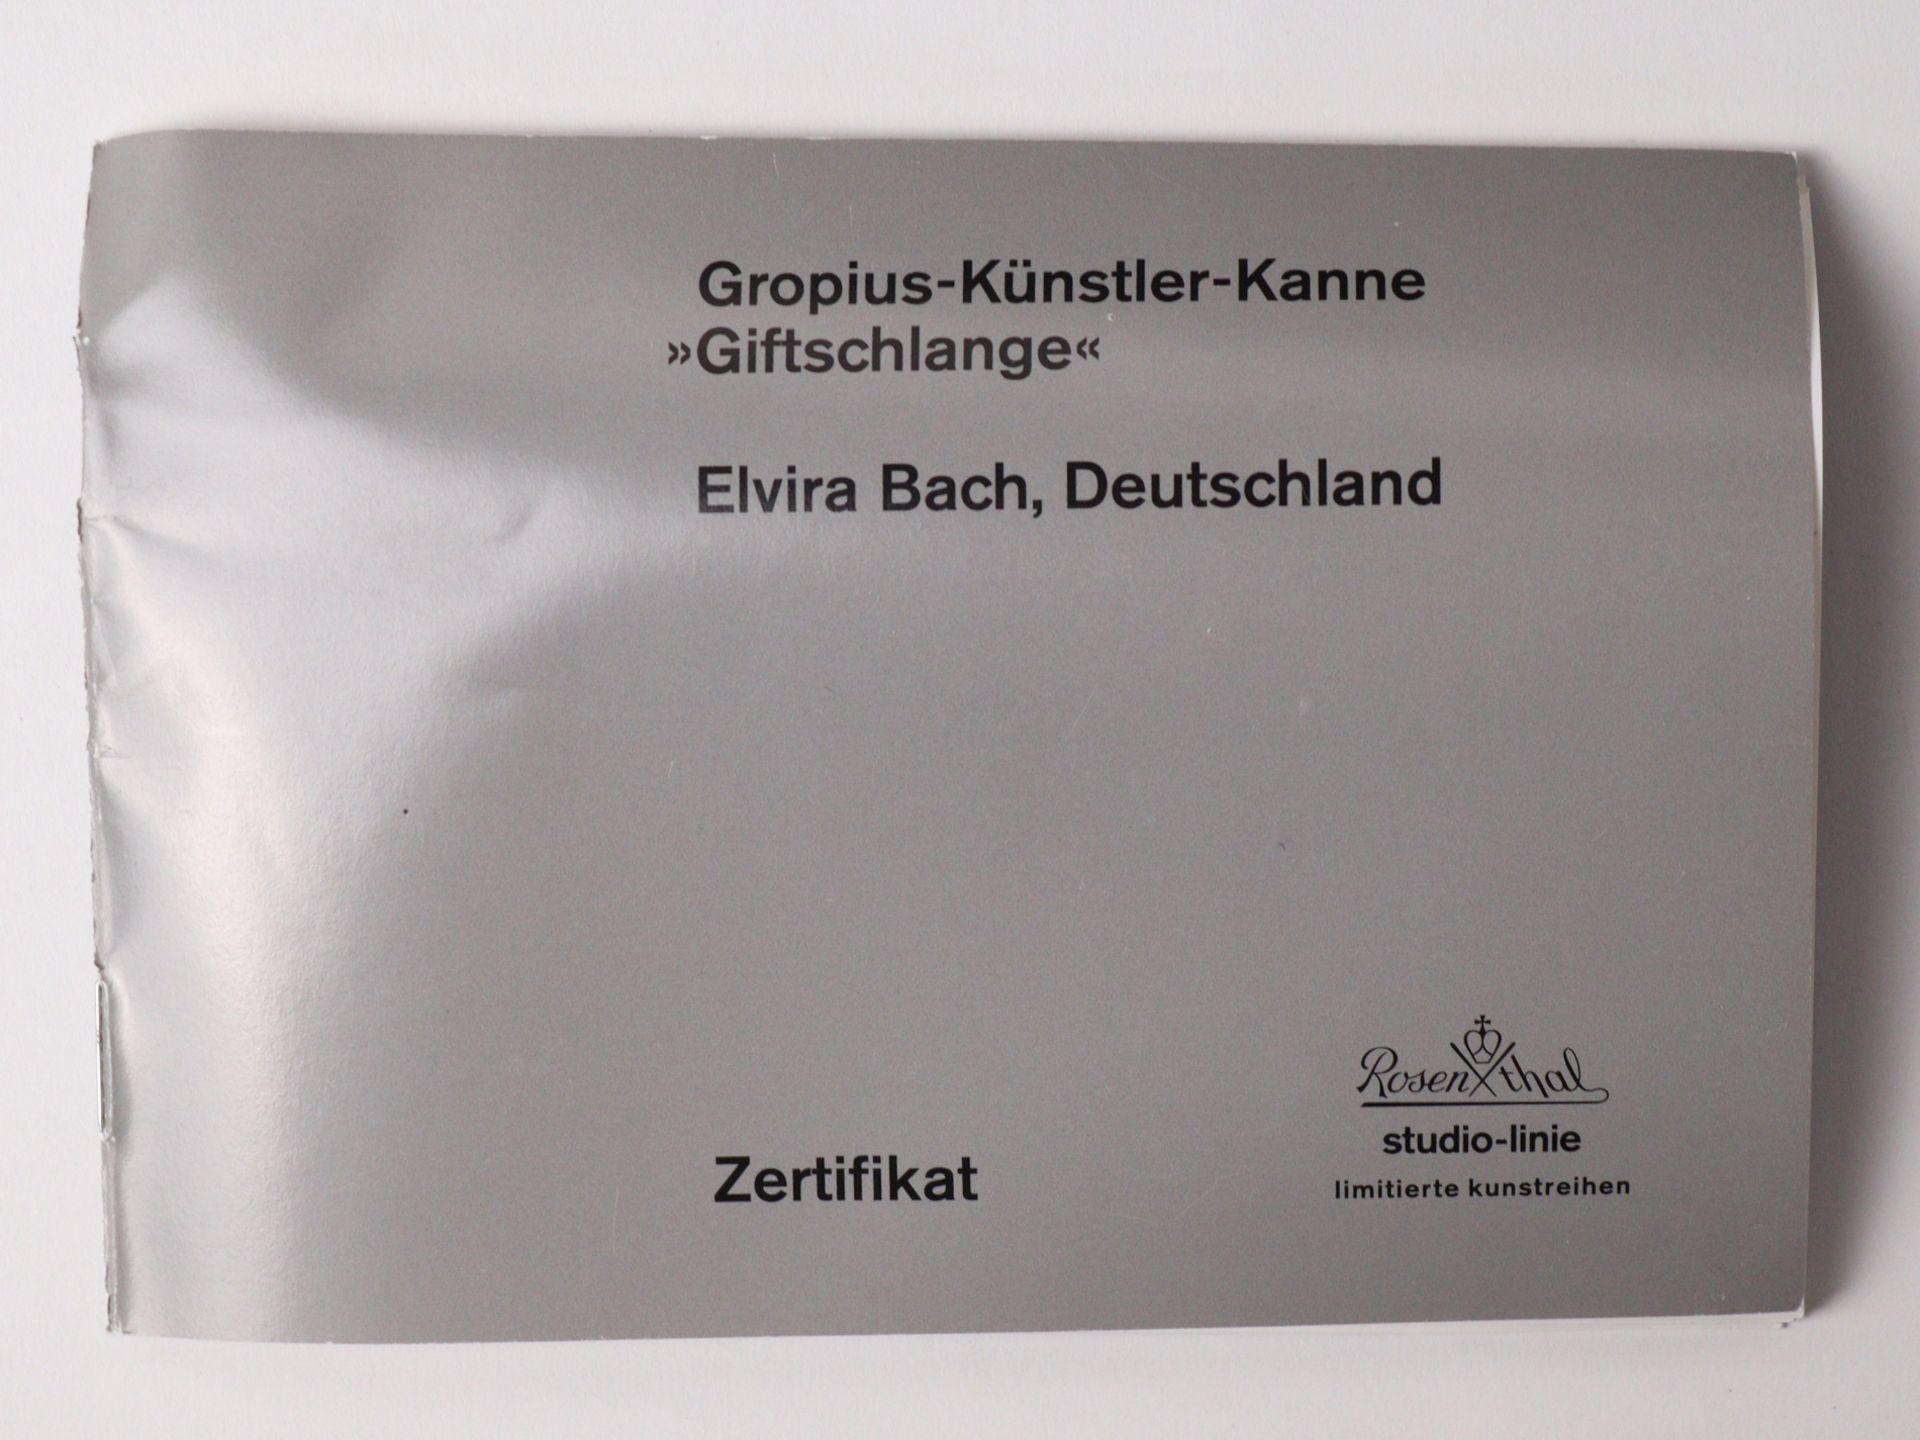 Rosenthal studio-linie - Gropius-Künstler-Kanne Elvira Bach, Deutschland - Image 9 of 11